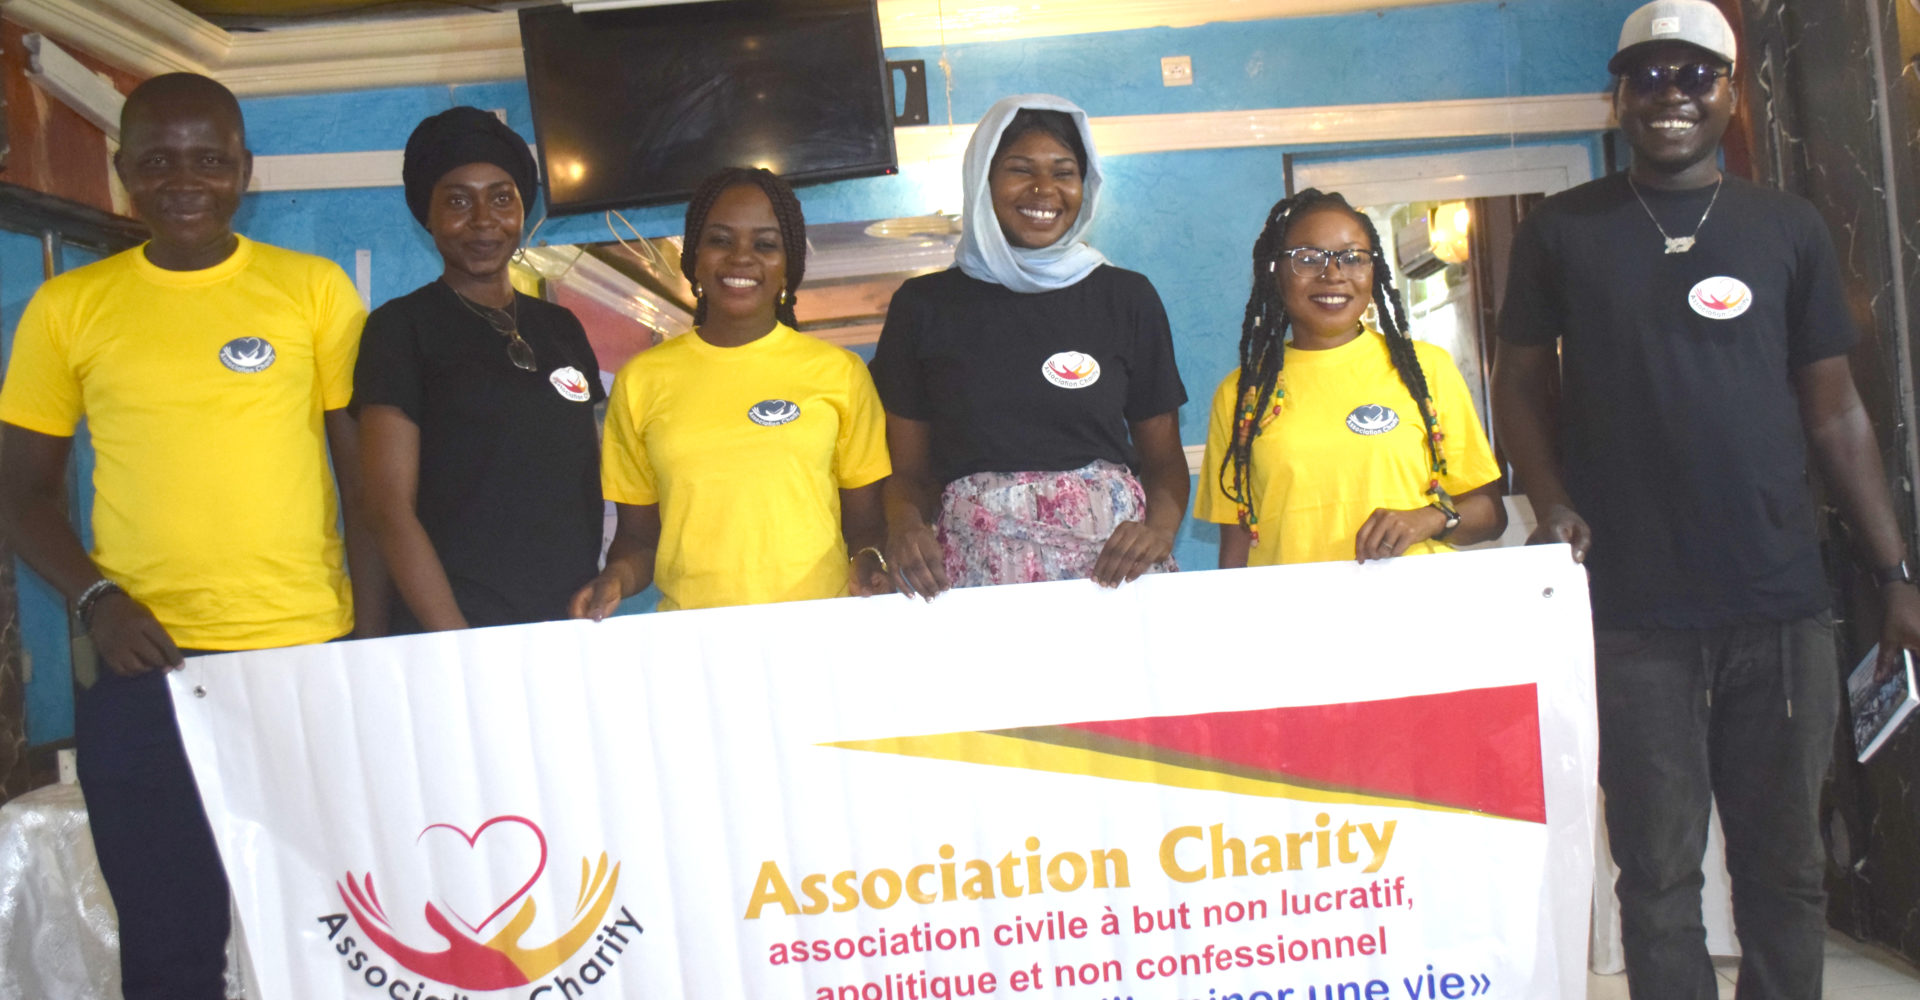 Une association de bienfaisance dénommée Charity voit le jour 1